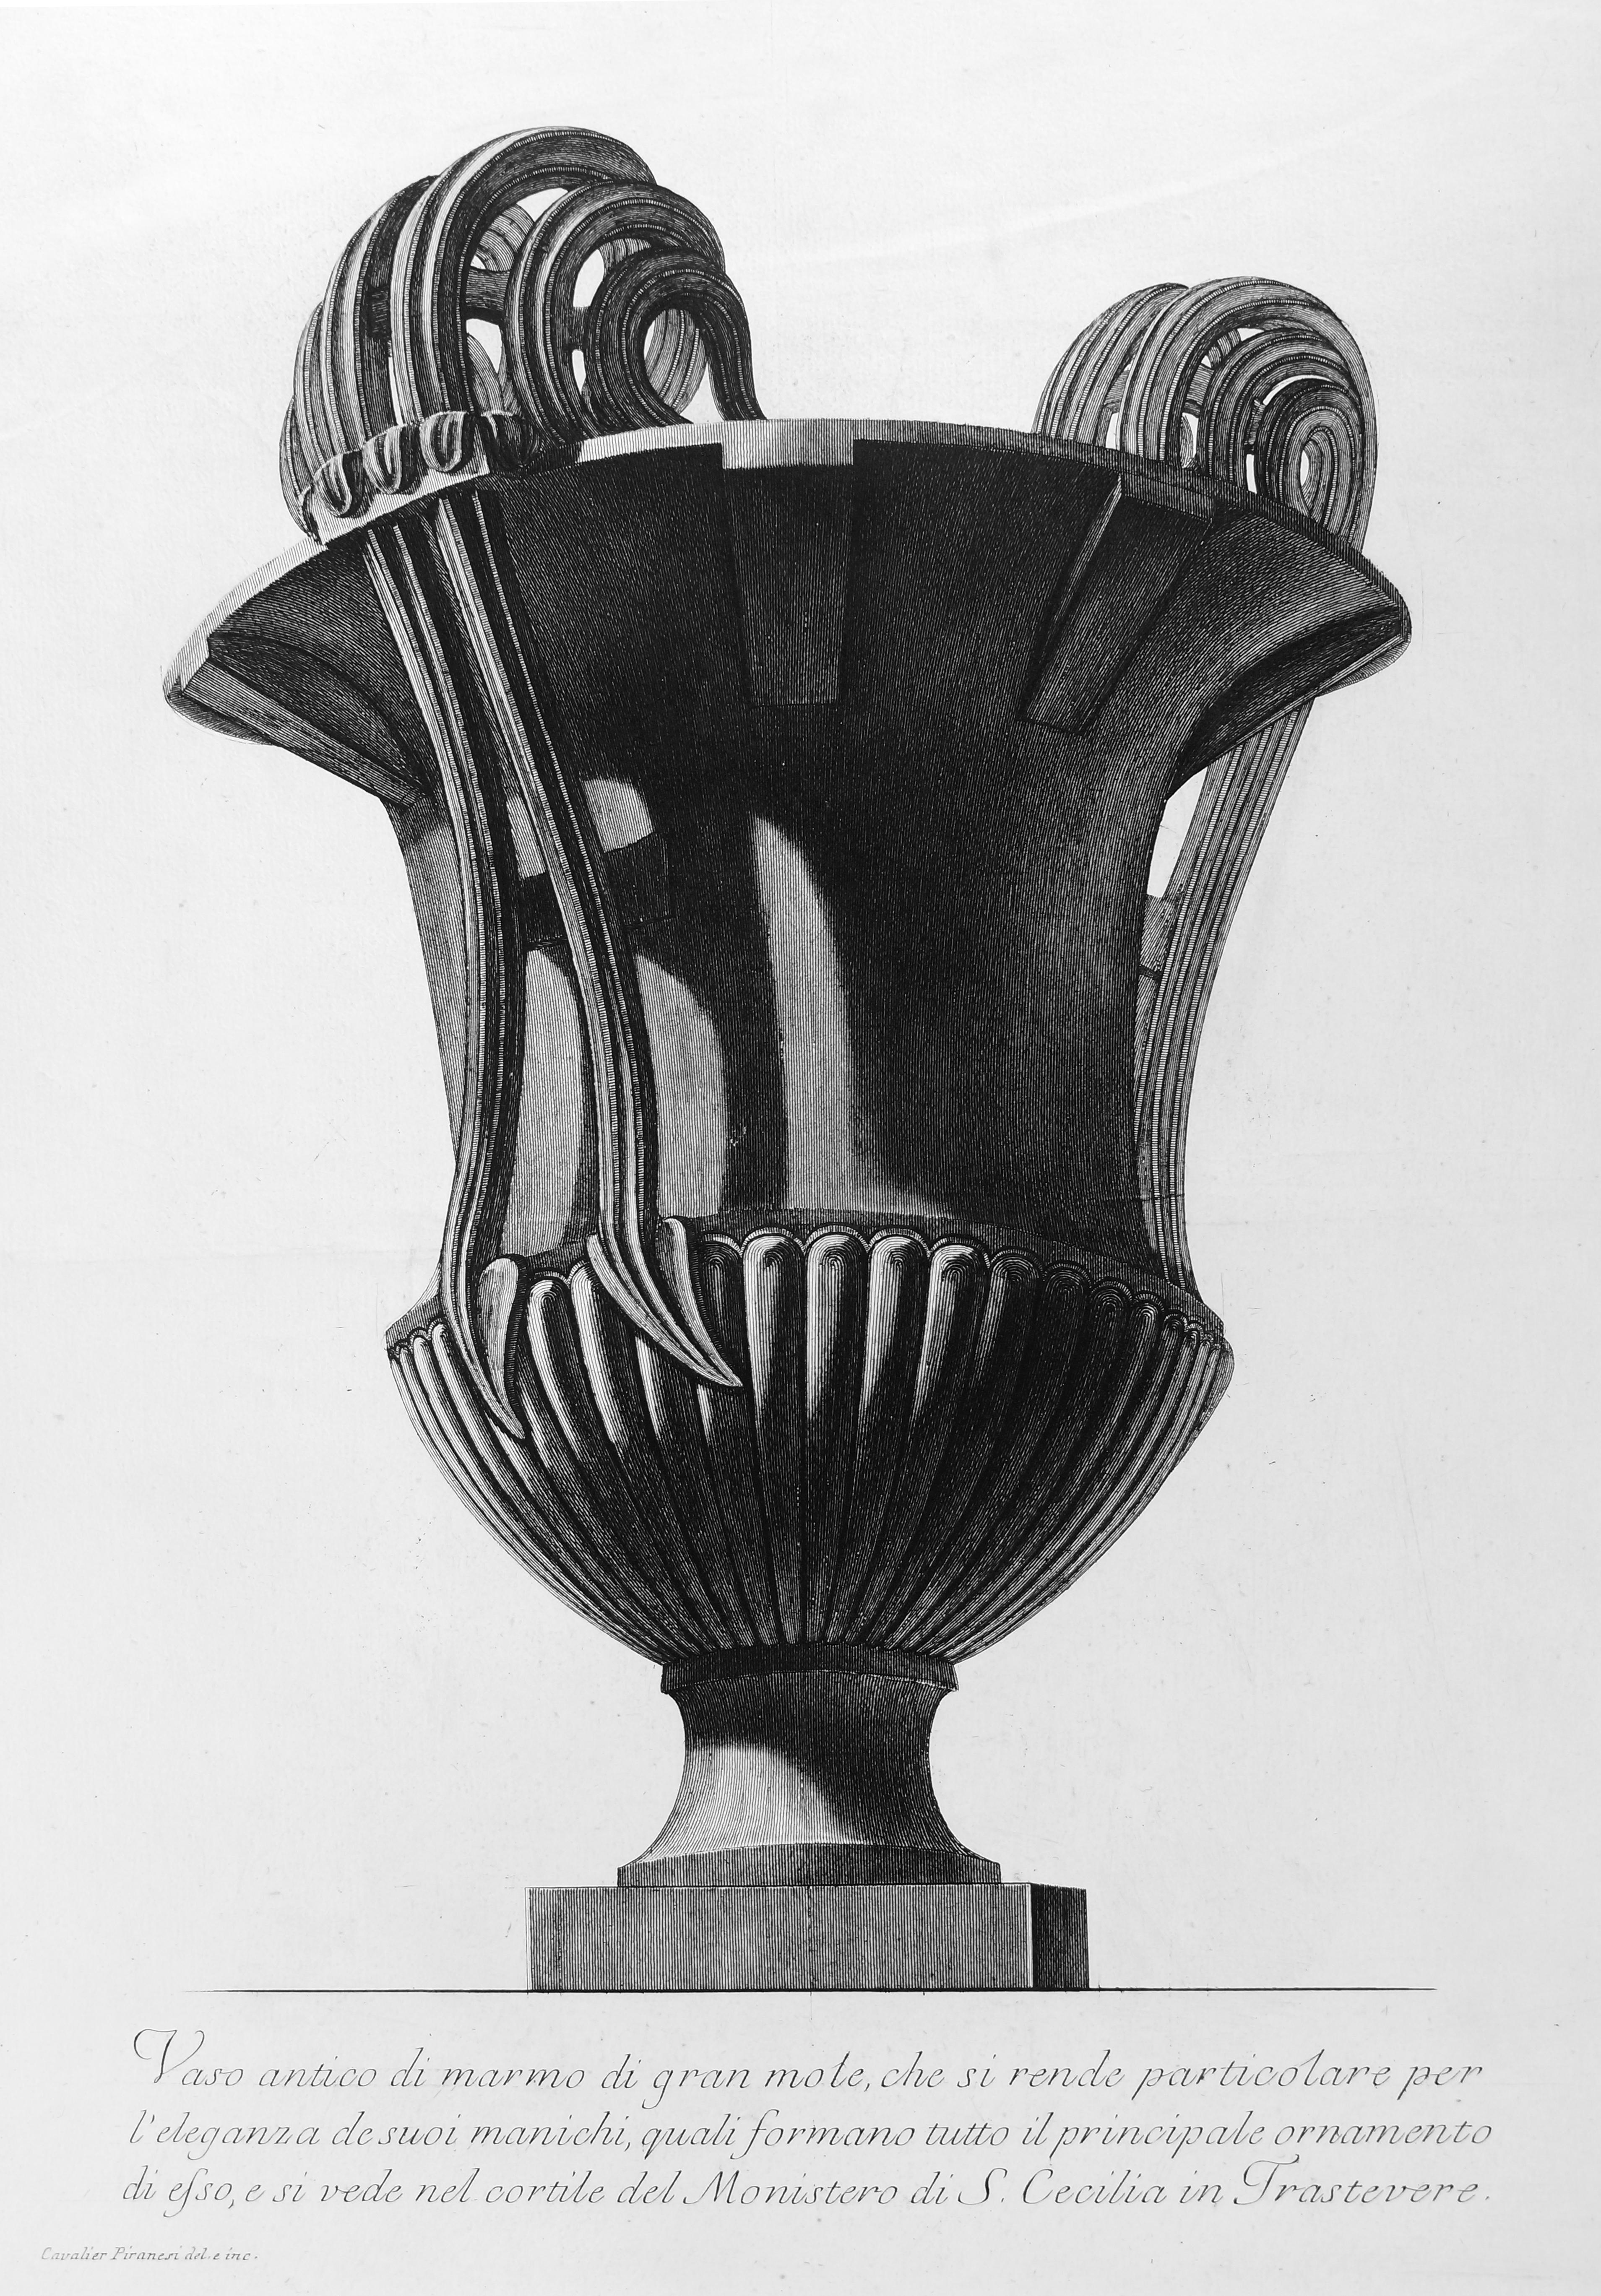 Giovanni Battista Piranesi Figurative Print - Vaso Antico di marmo di gran mole... - Etching - 1778